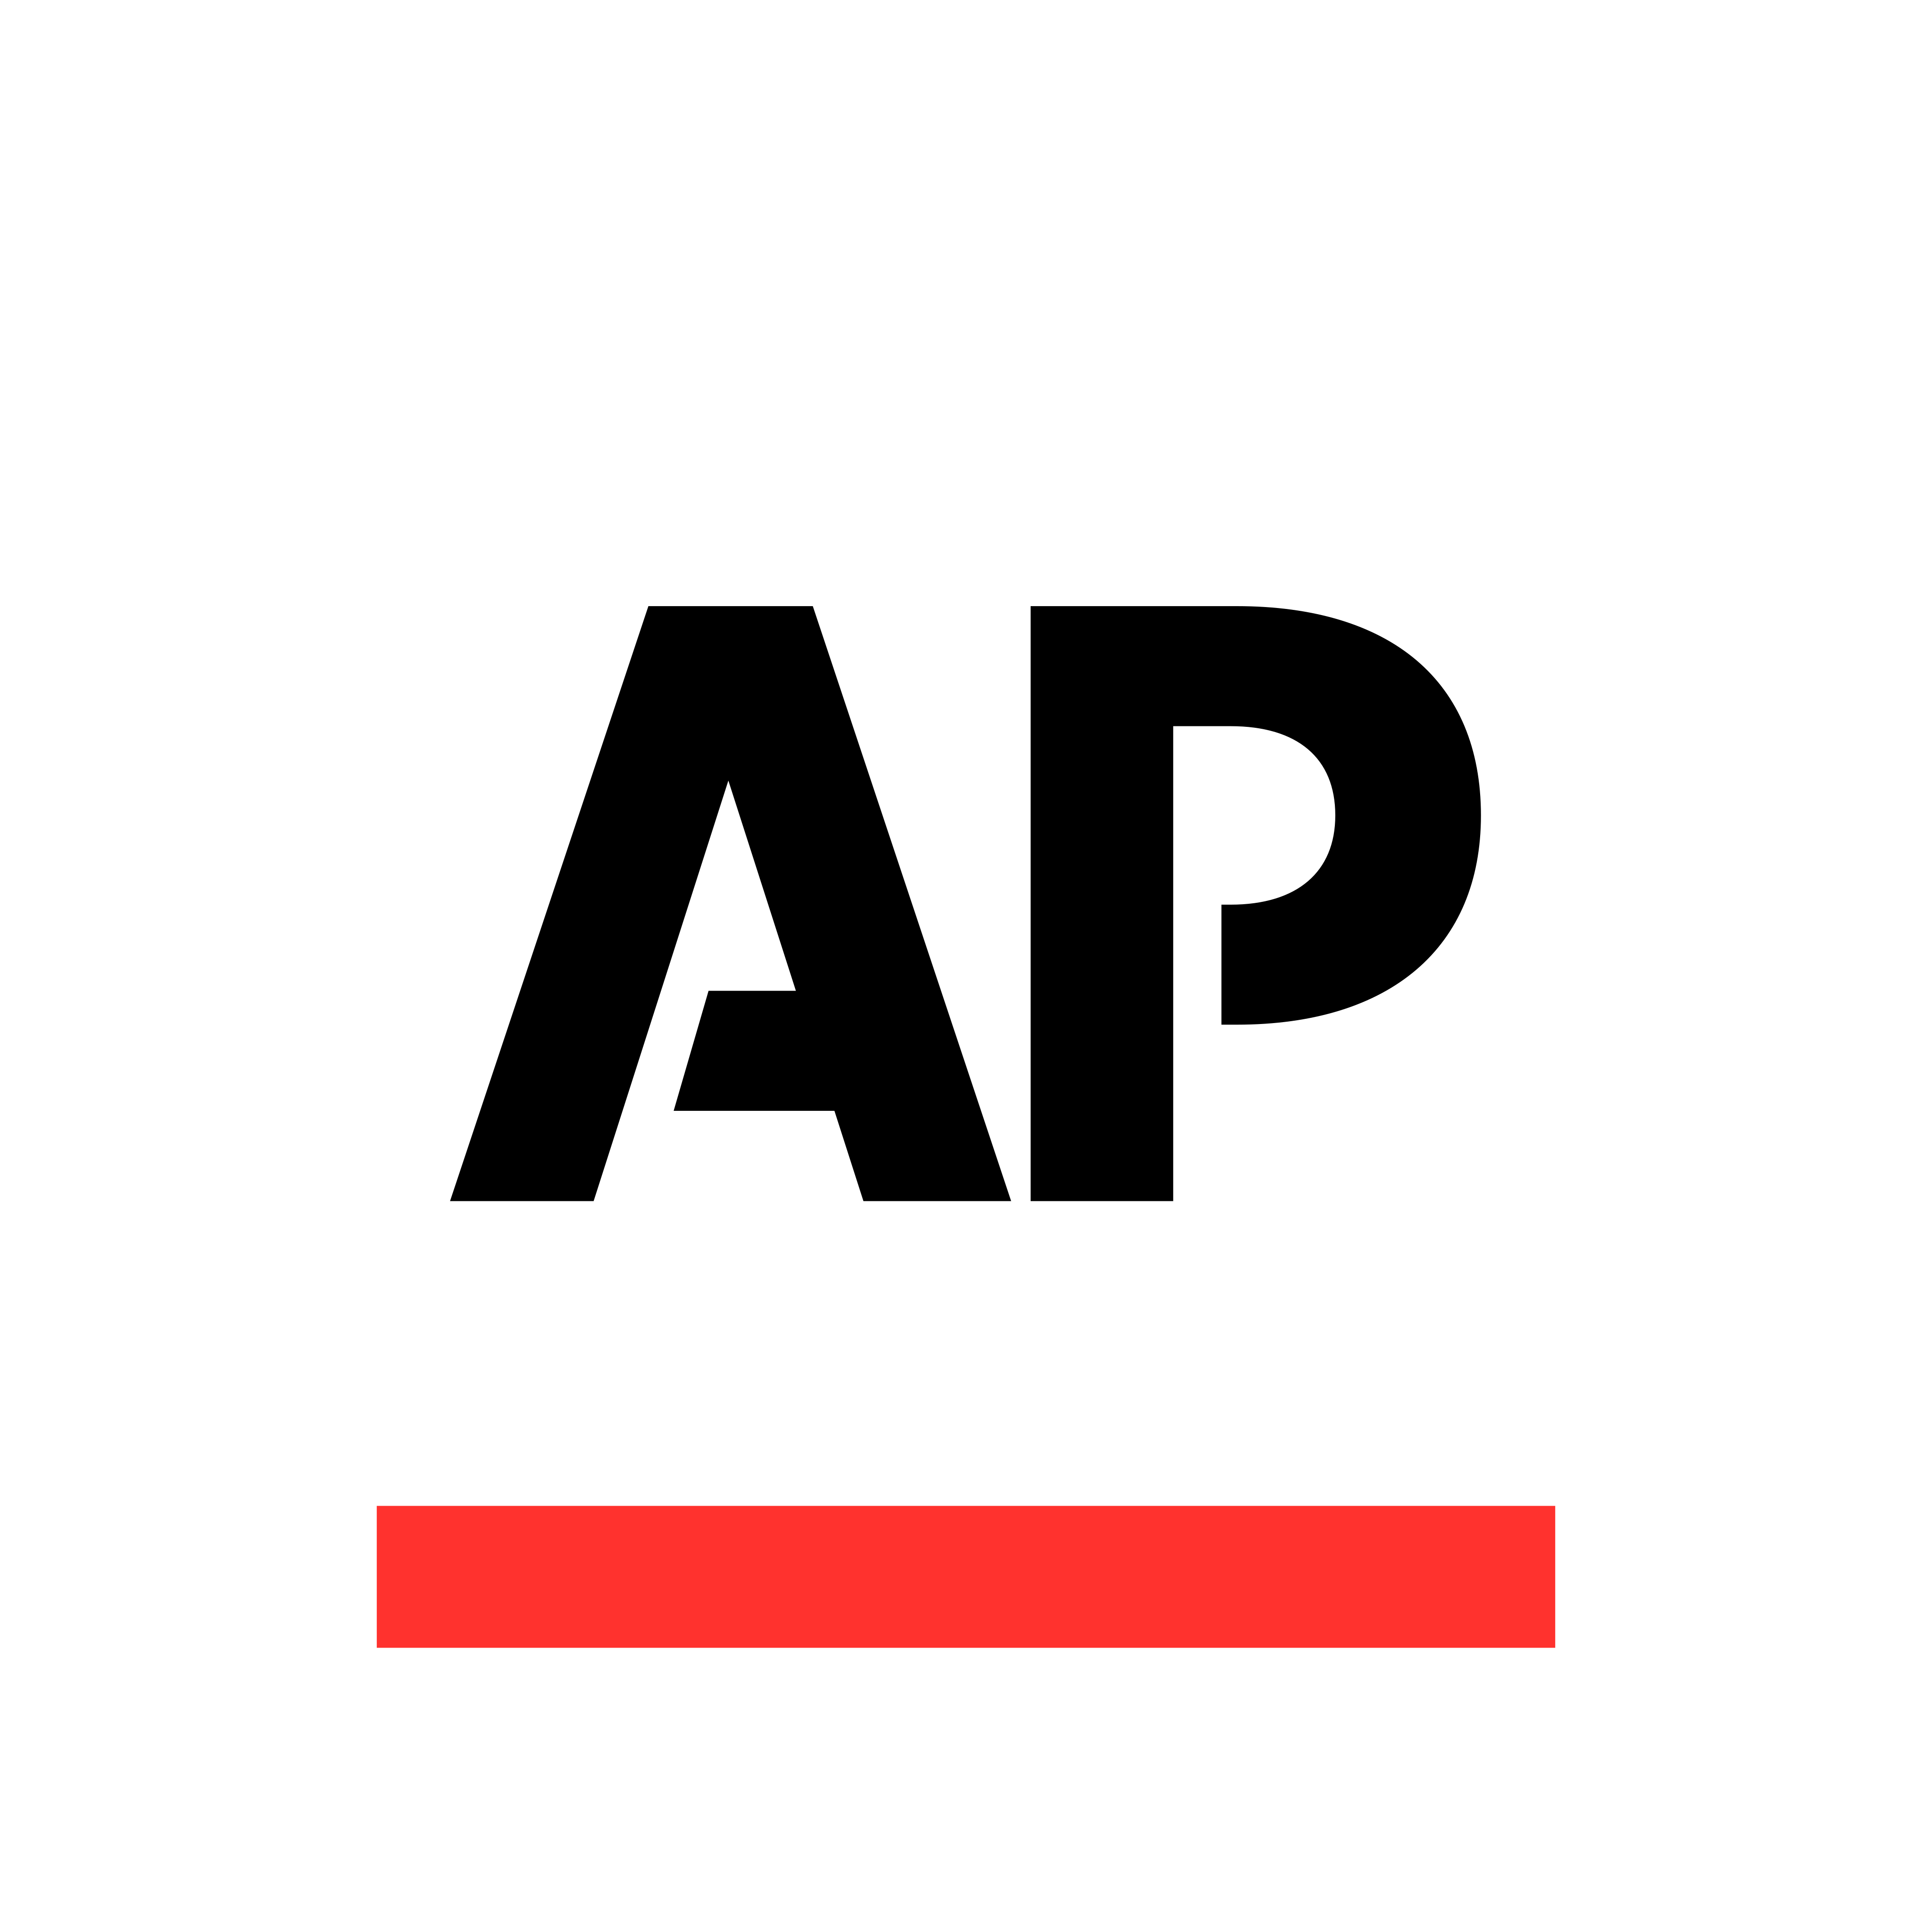 associated press logo 0 - Associated Press Logo